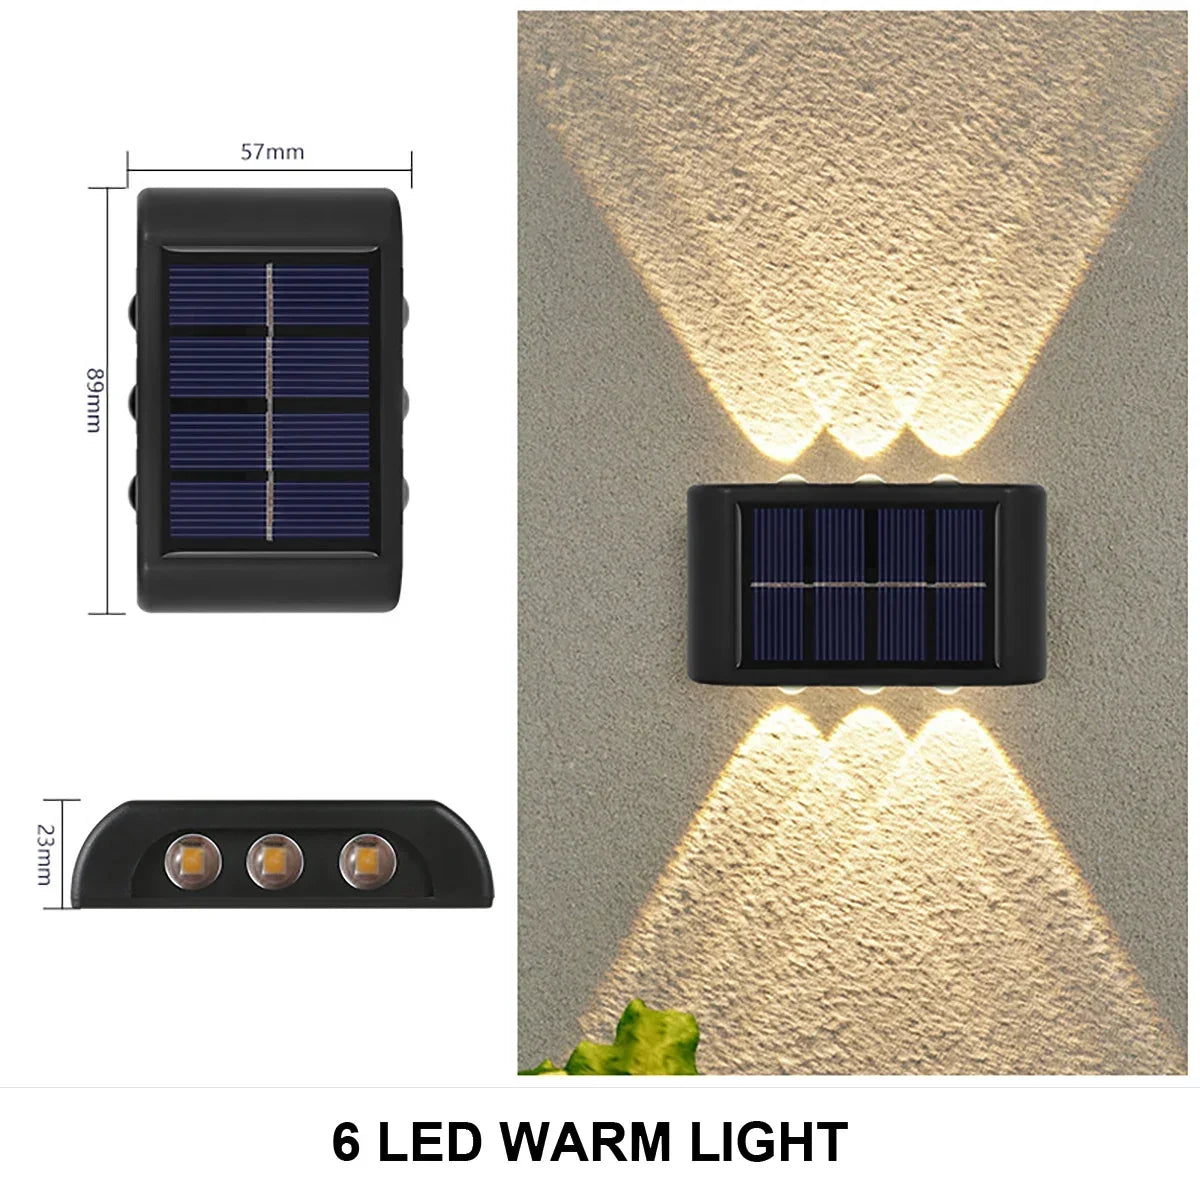 새로운 태양 벽 조명 야외 방수 LED 태양열 램프 위아래로 빛나는 조명 정원 발코니 야드 거리 장식 램프